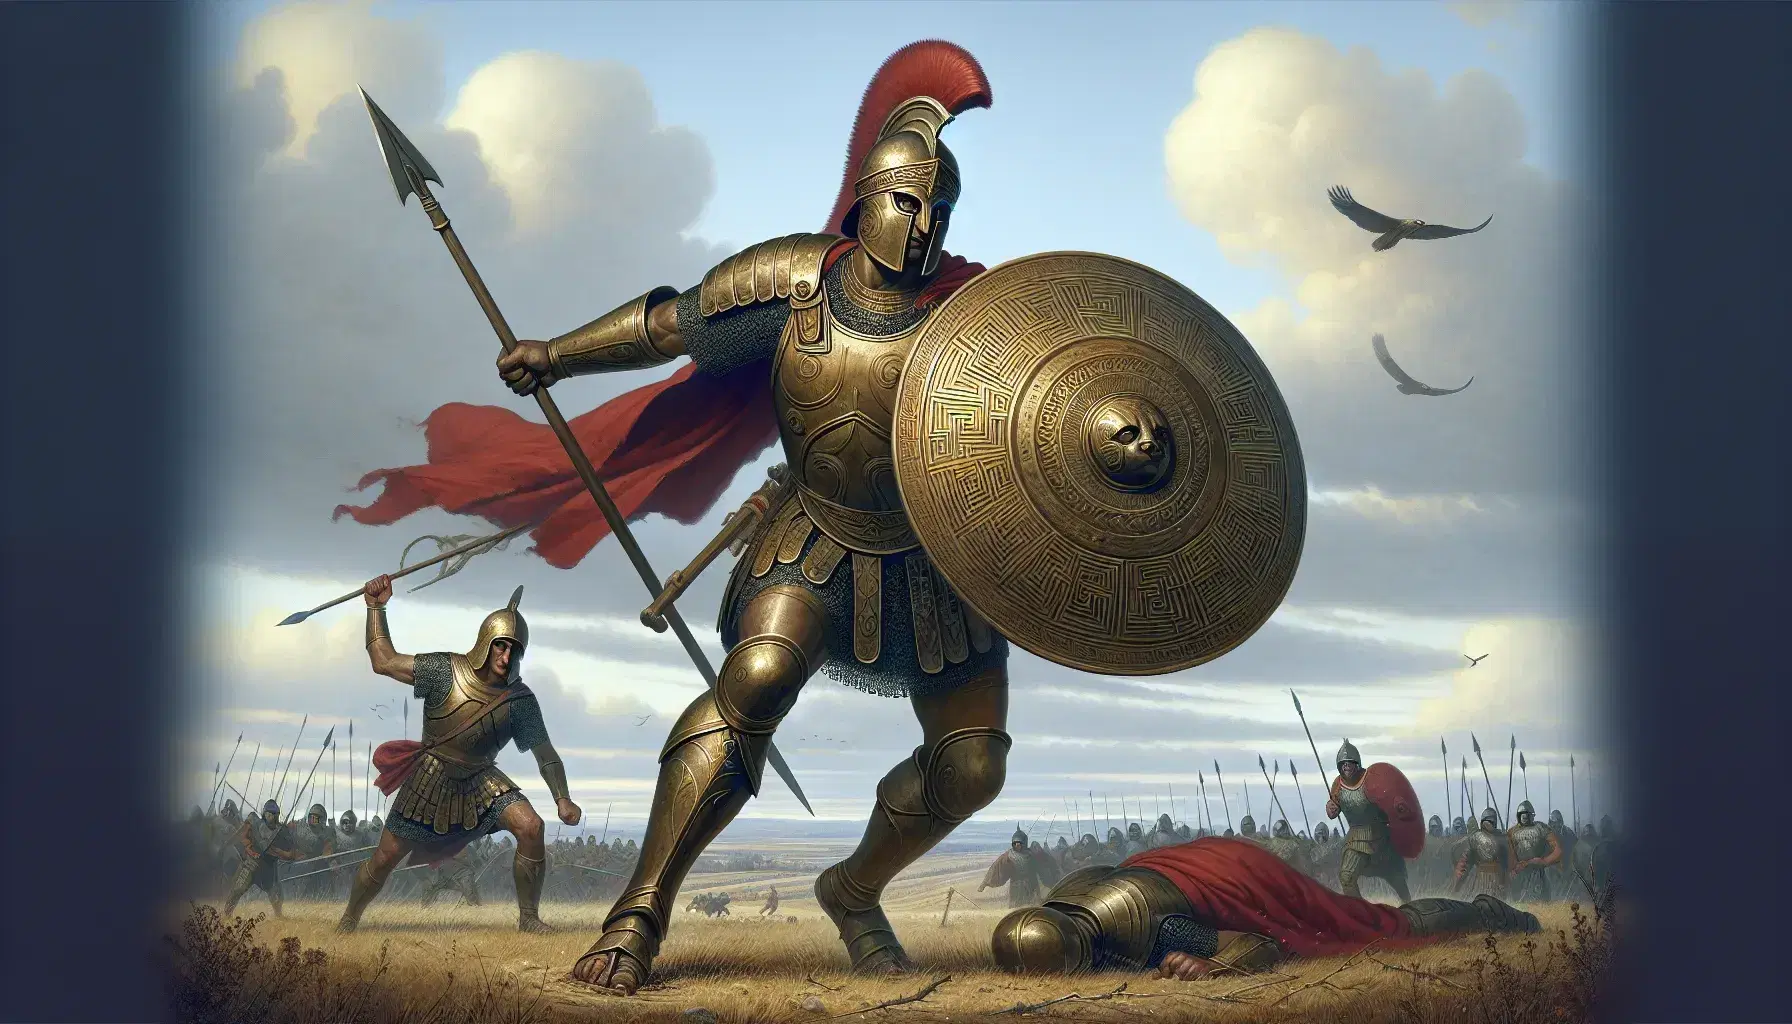 Guerrero con armadura de bronce y capa roja avanza con lanza y escudo en batalla épica bajo cielo azul con ave rapaz volando.